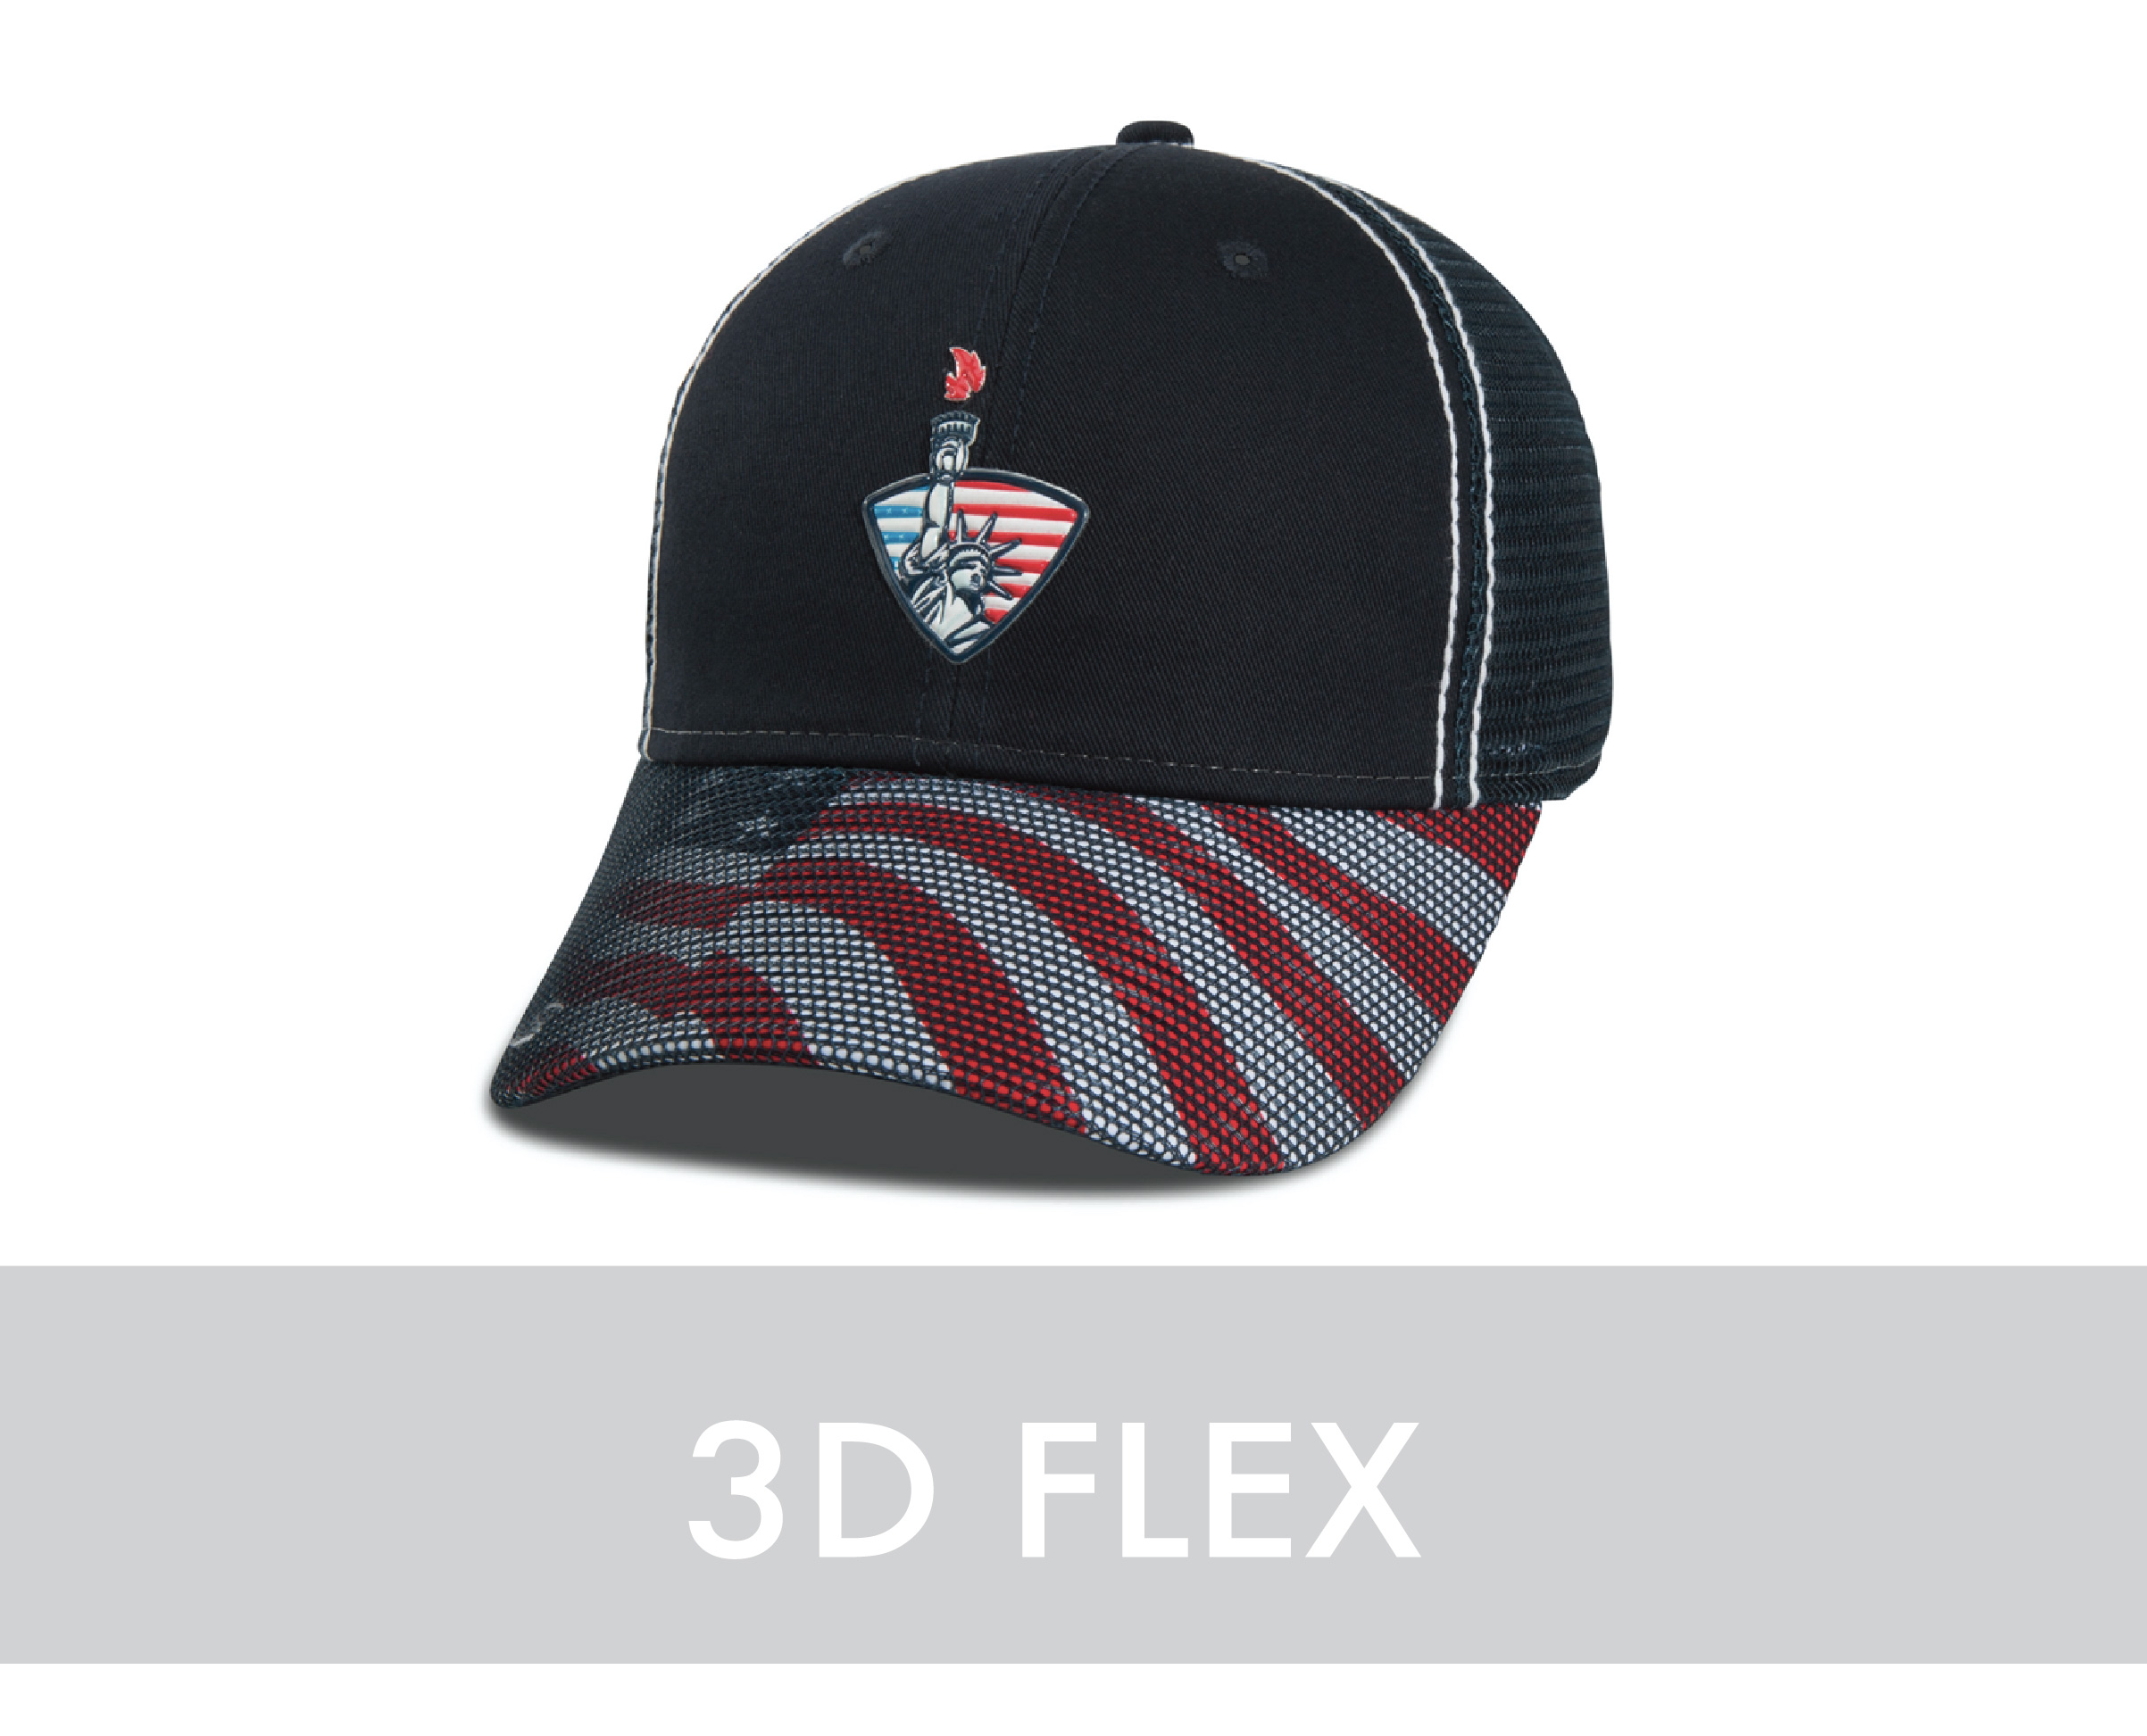 3D flex decoration for hats